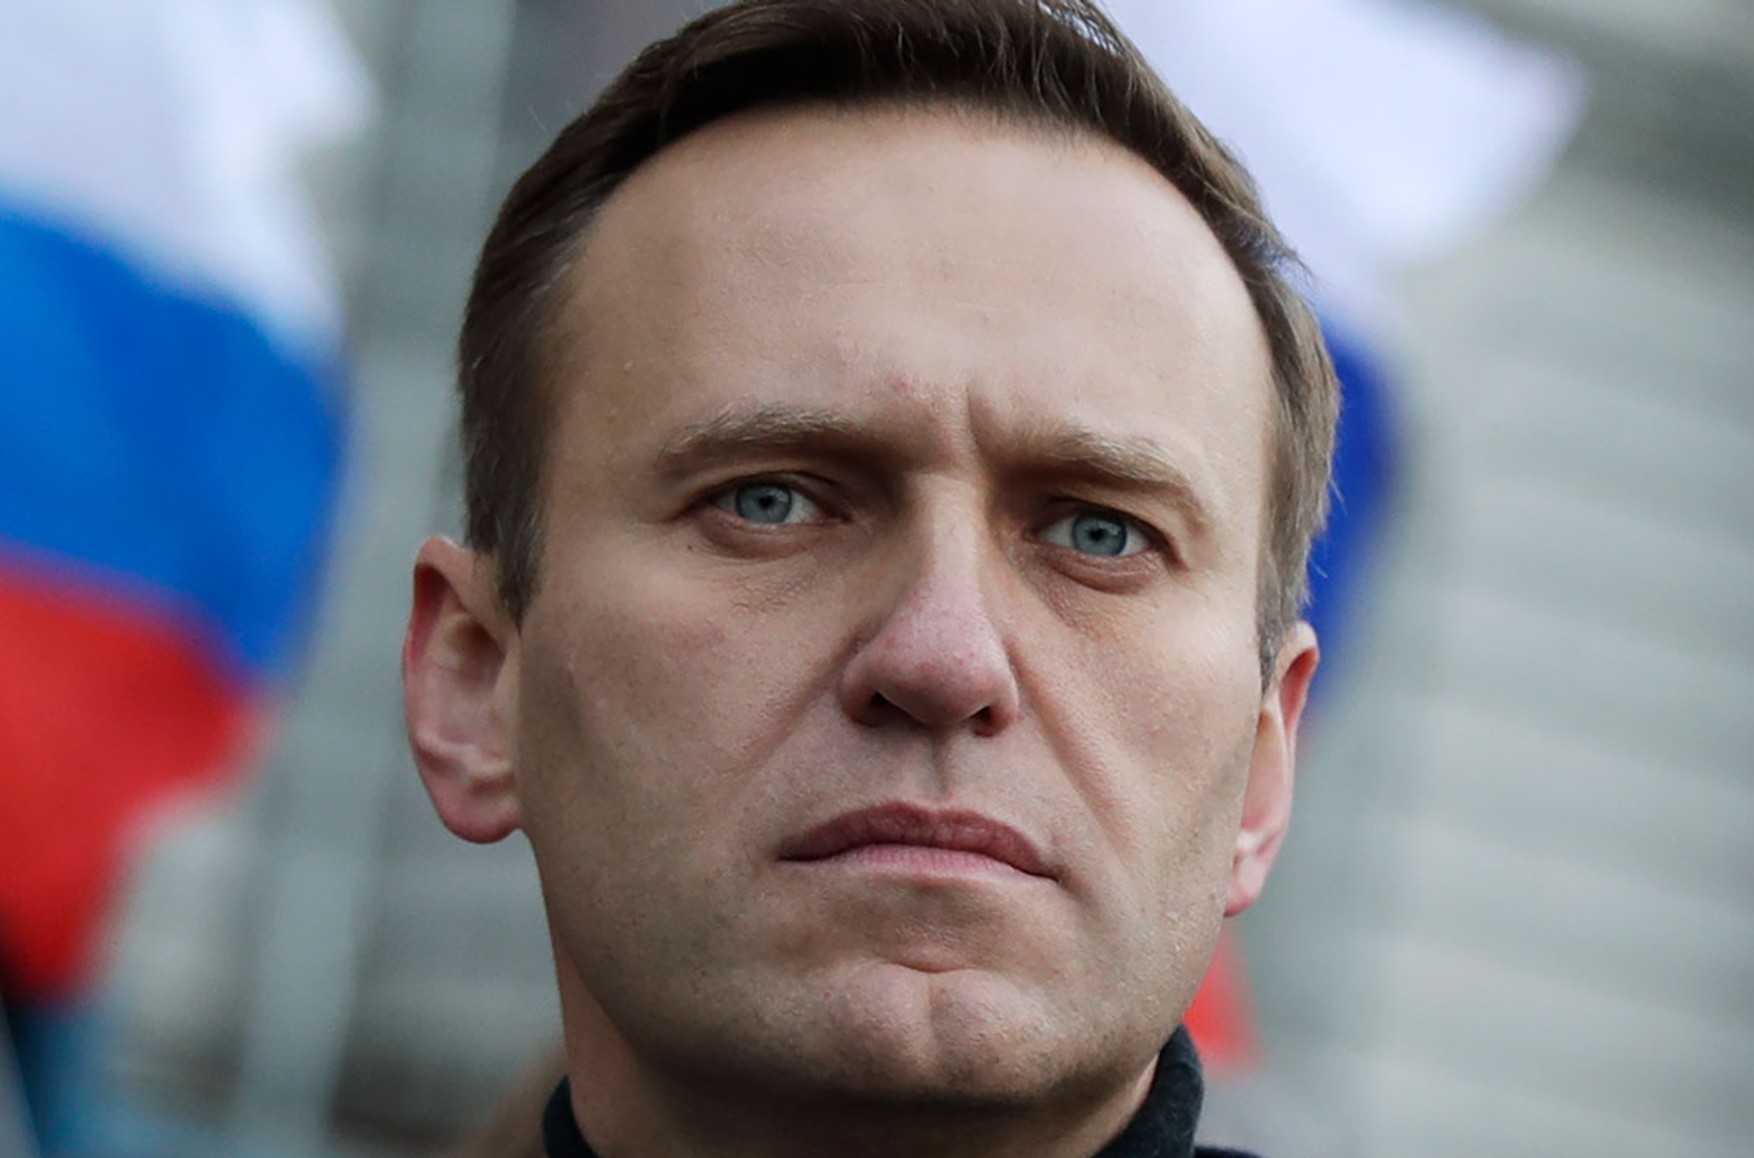 Навального відвезли в невідомому напрямку. Його адвокати не знають, де він зараз перебуває